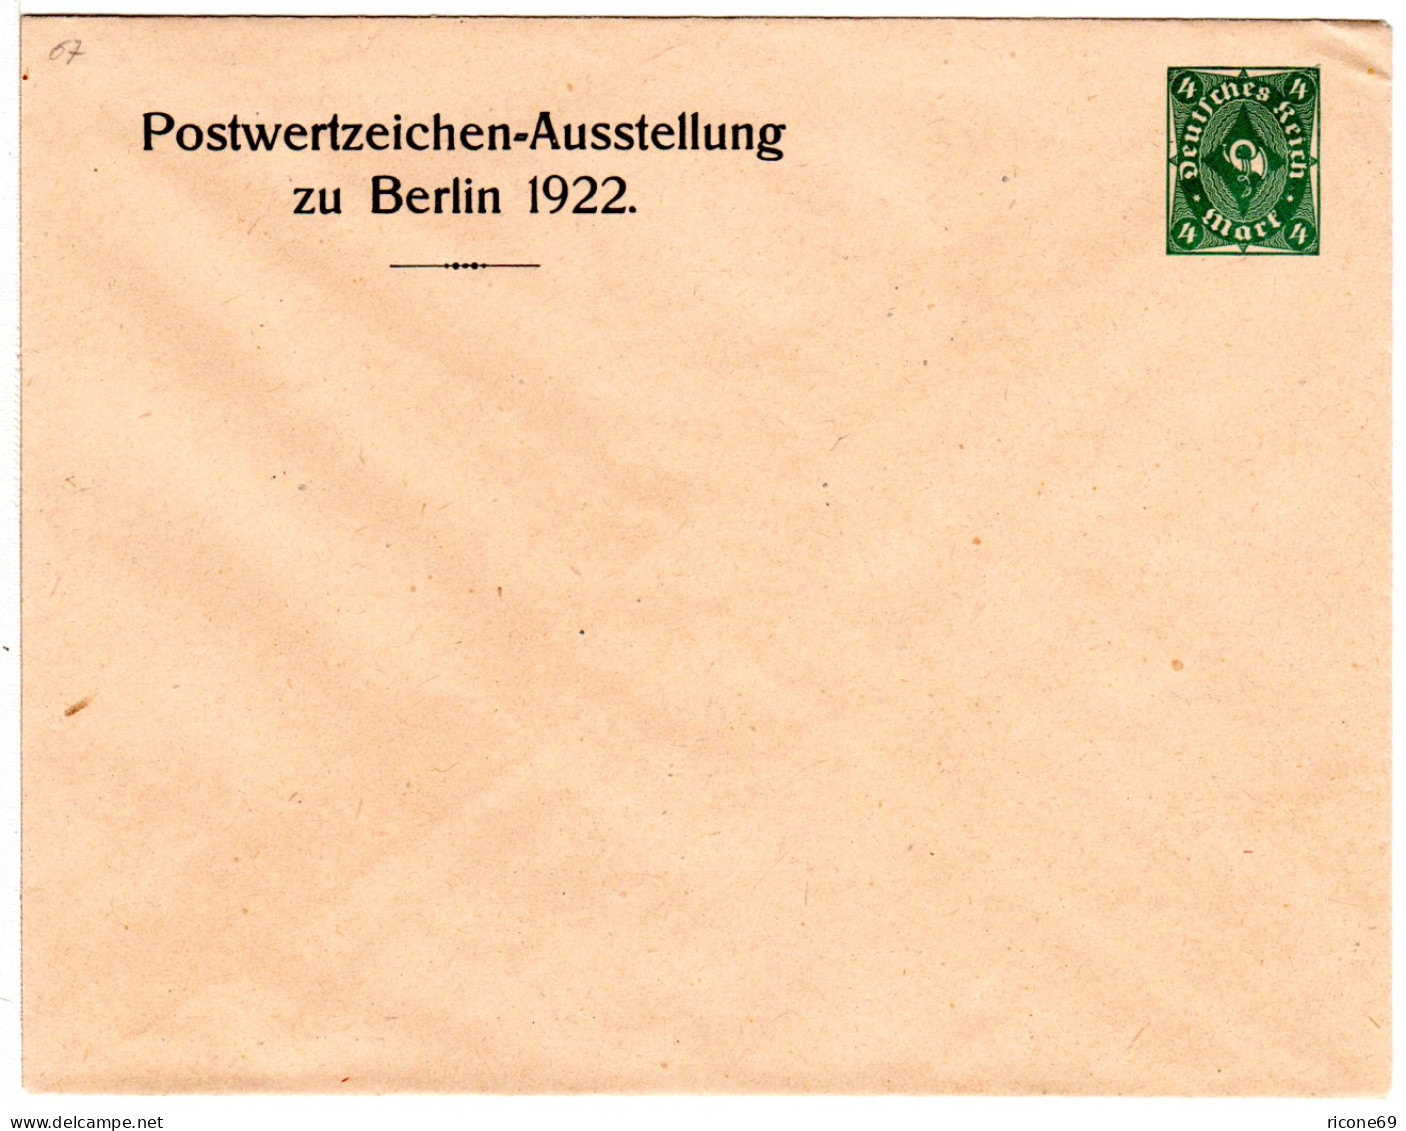 DR, Ungebr. 4 Mk Privatganzsachenumschlag Postwertzeichenausstellung Berlin 1922 - Covers & Documents